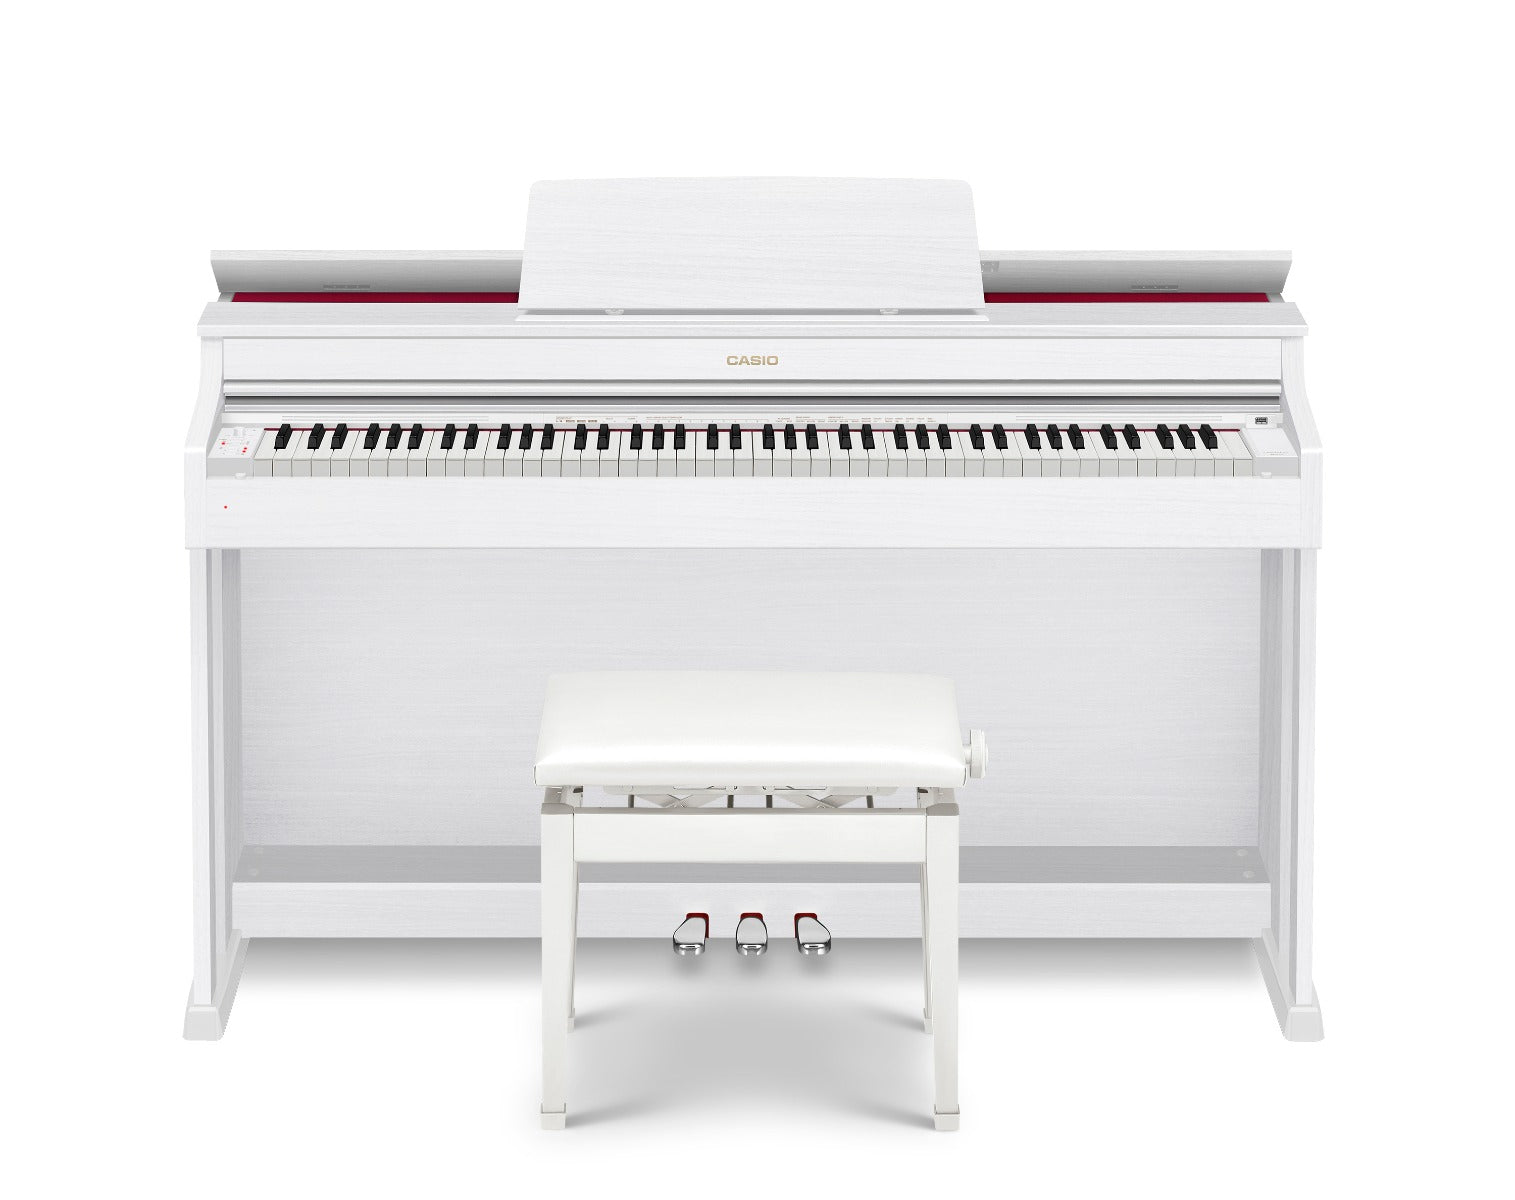 Casio Celviano AP-470 Digital Piano - White